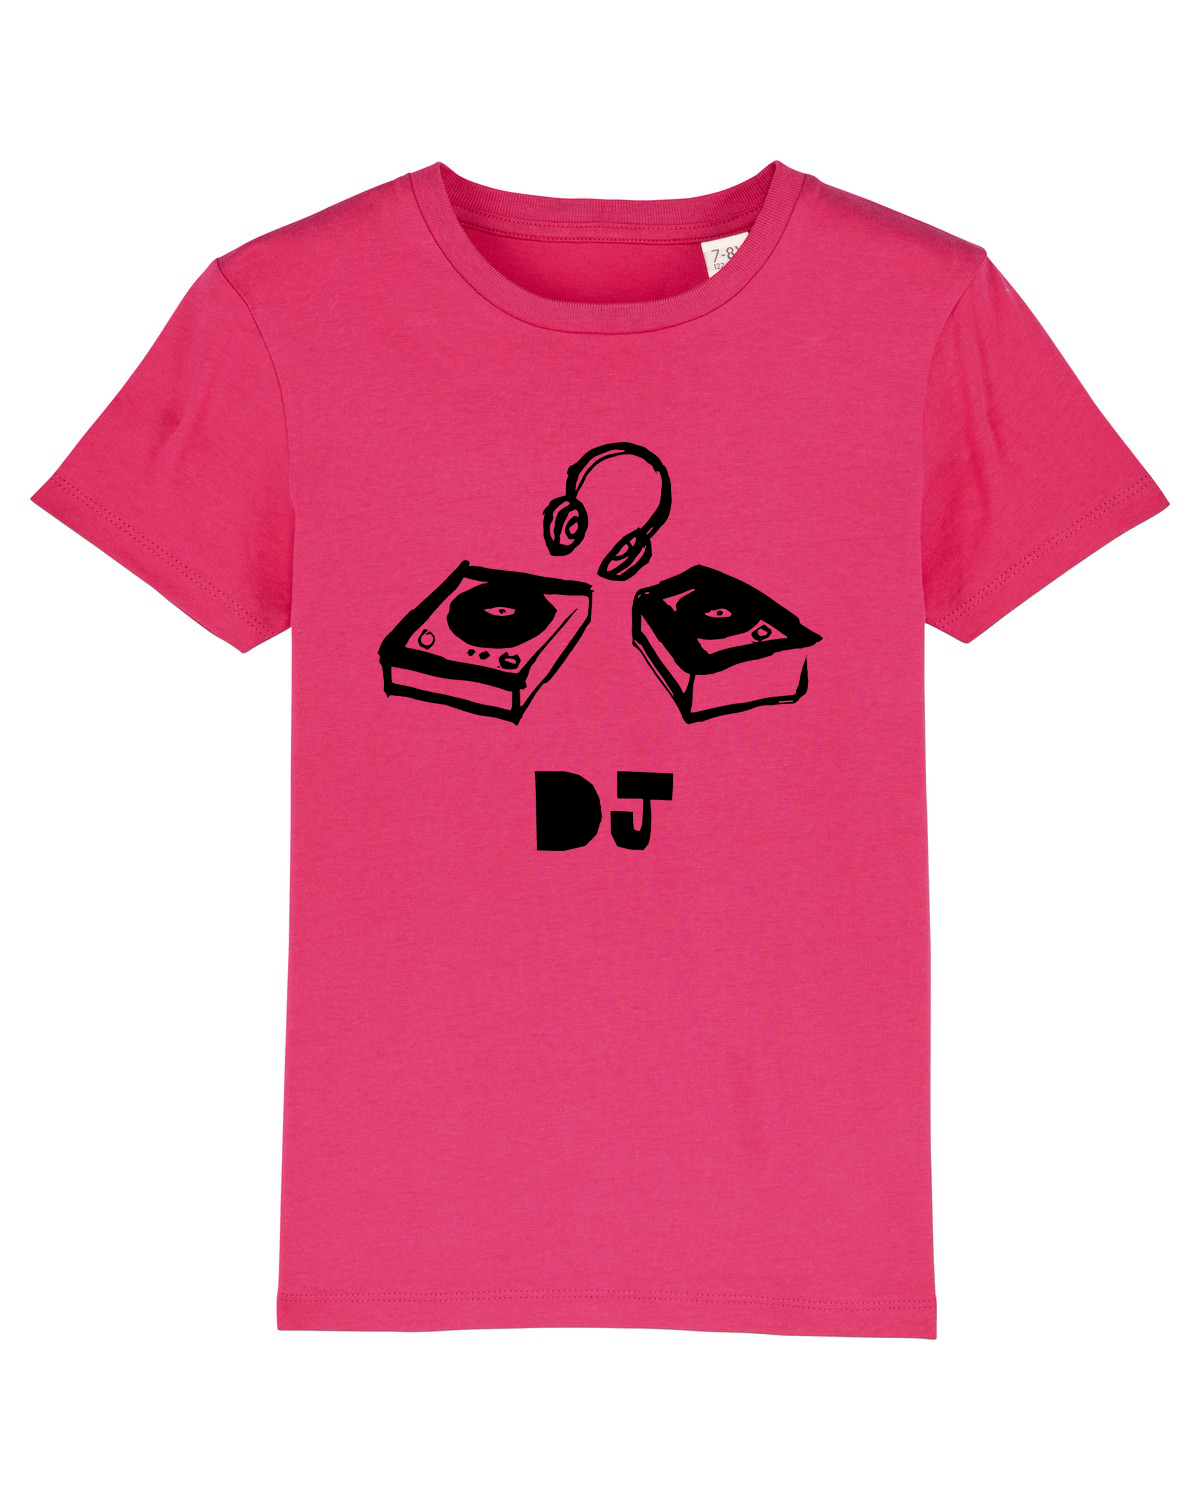 'DJ' Organic Kids T-shirt